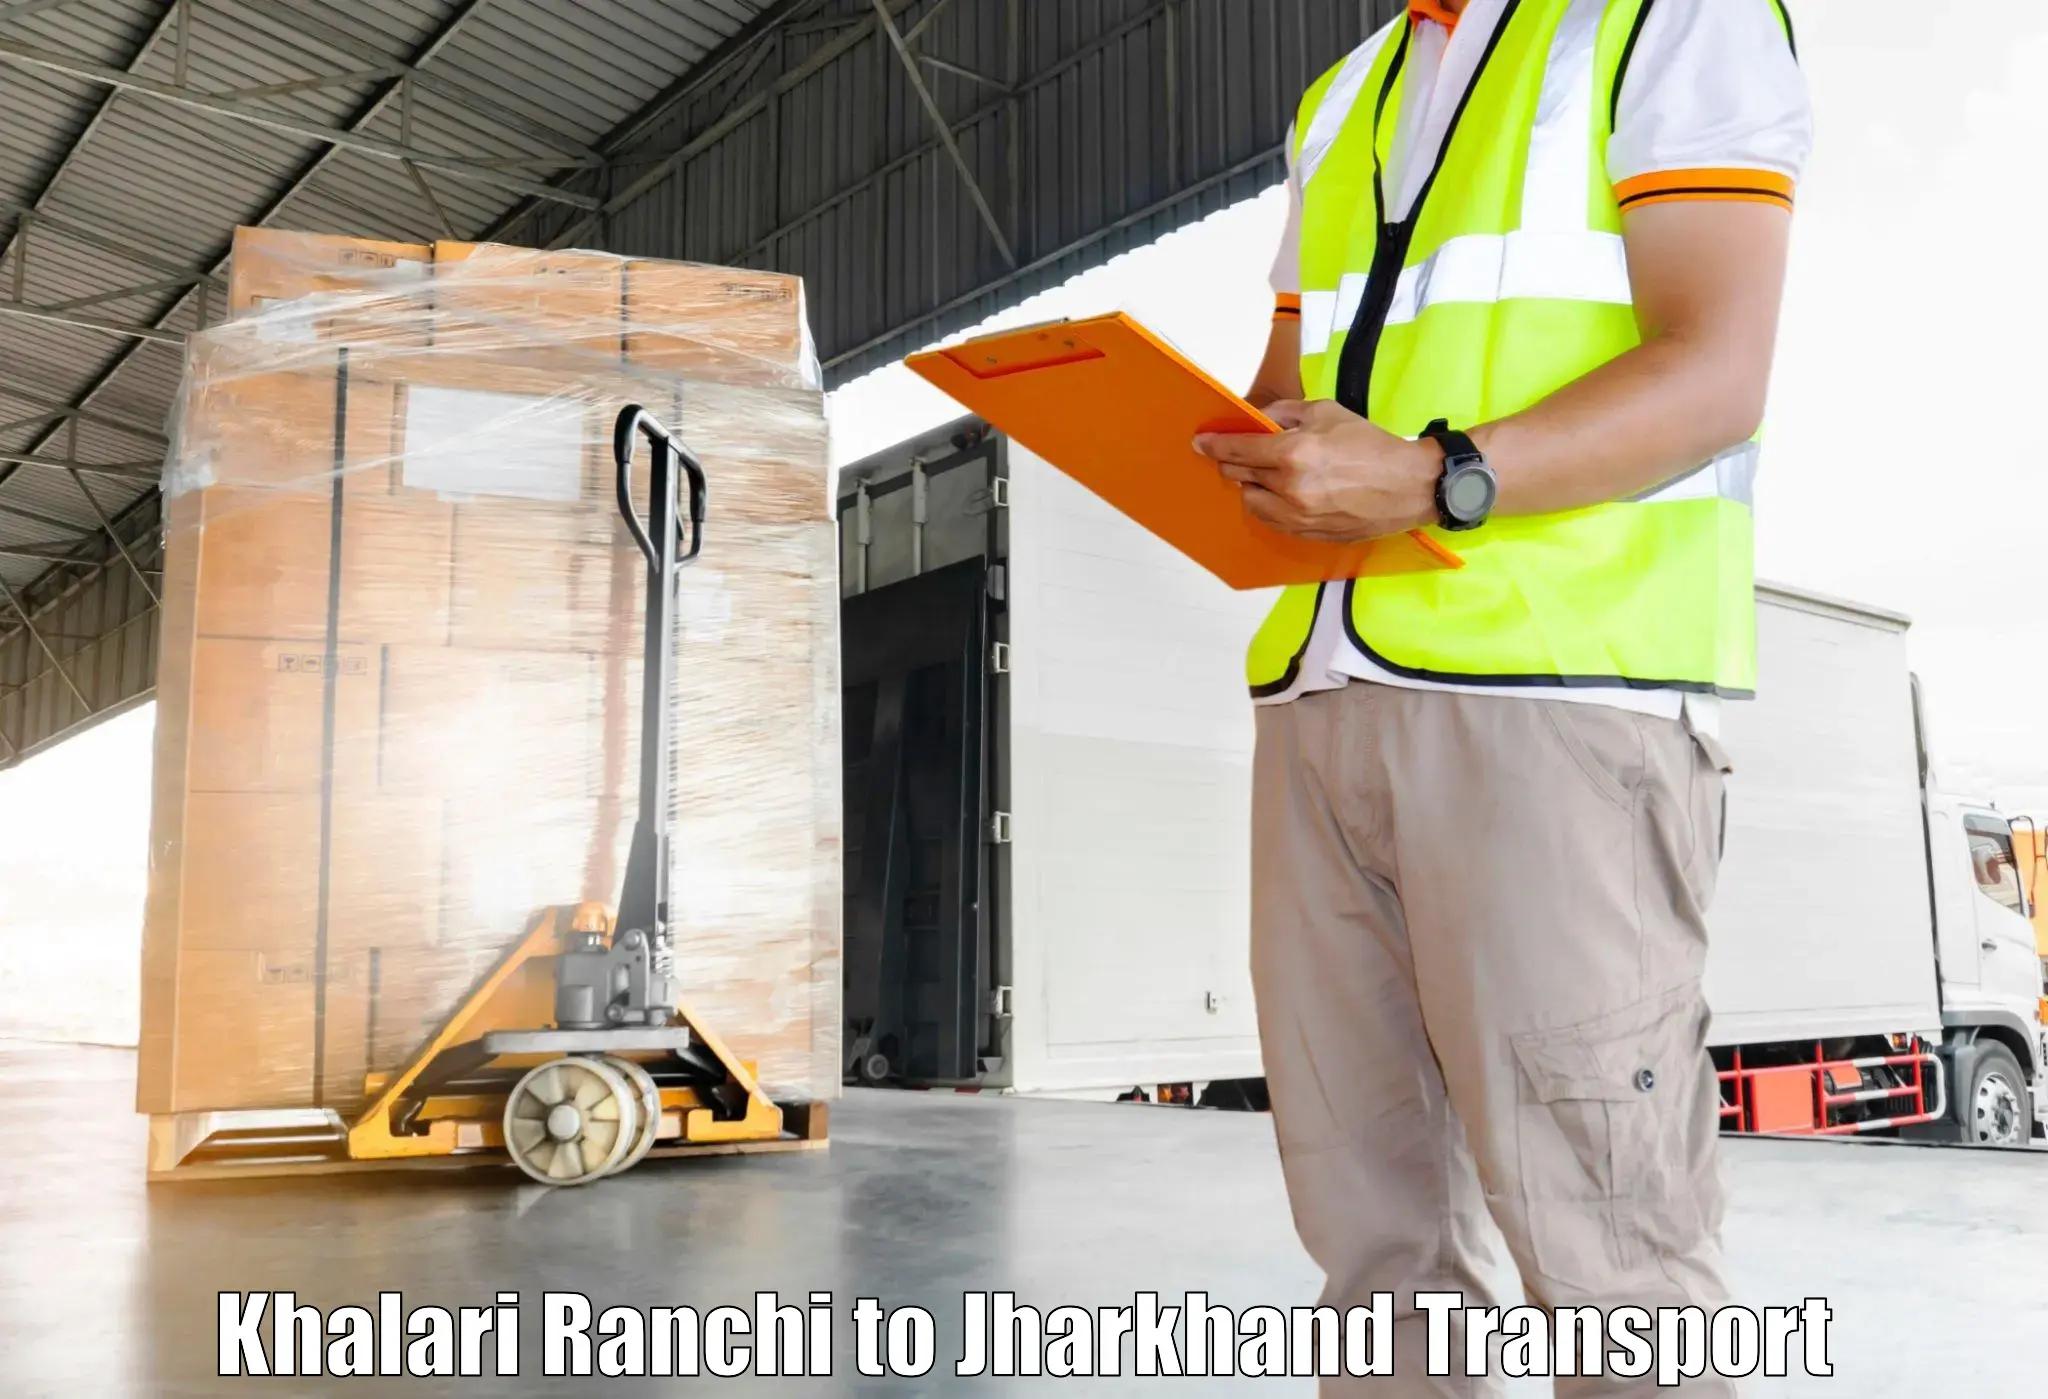 All India transport service Khalari Ranchi to Godda